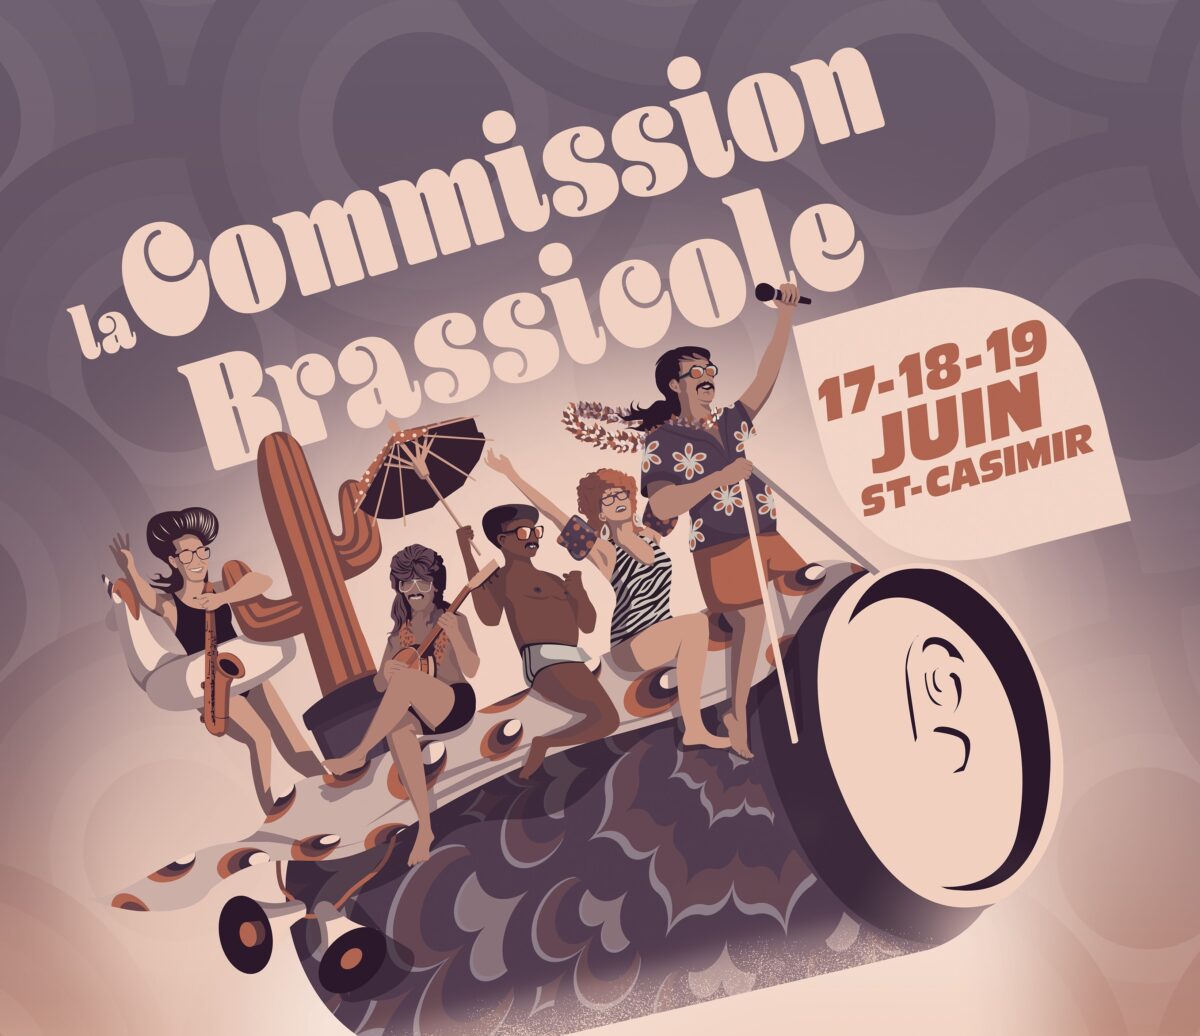 Commission brassicole 2